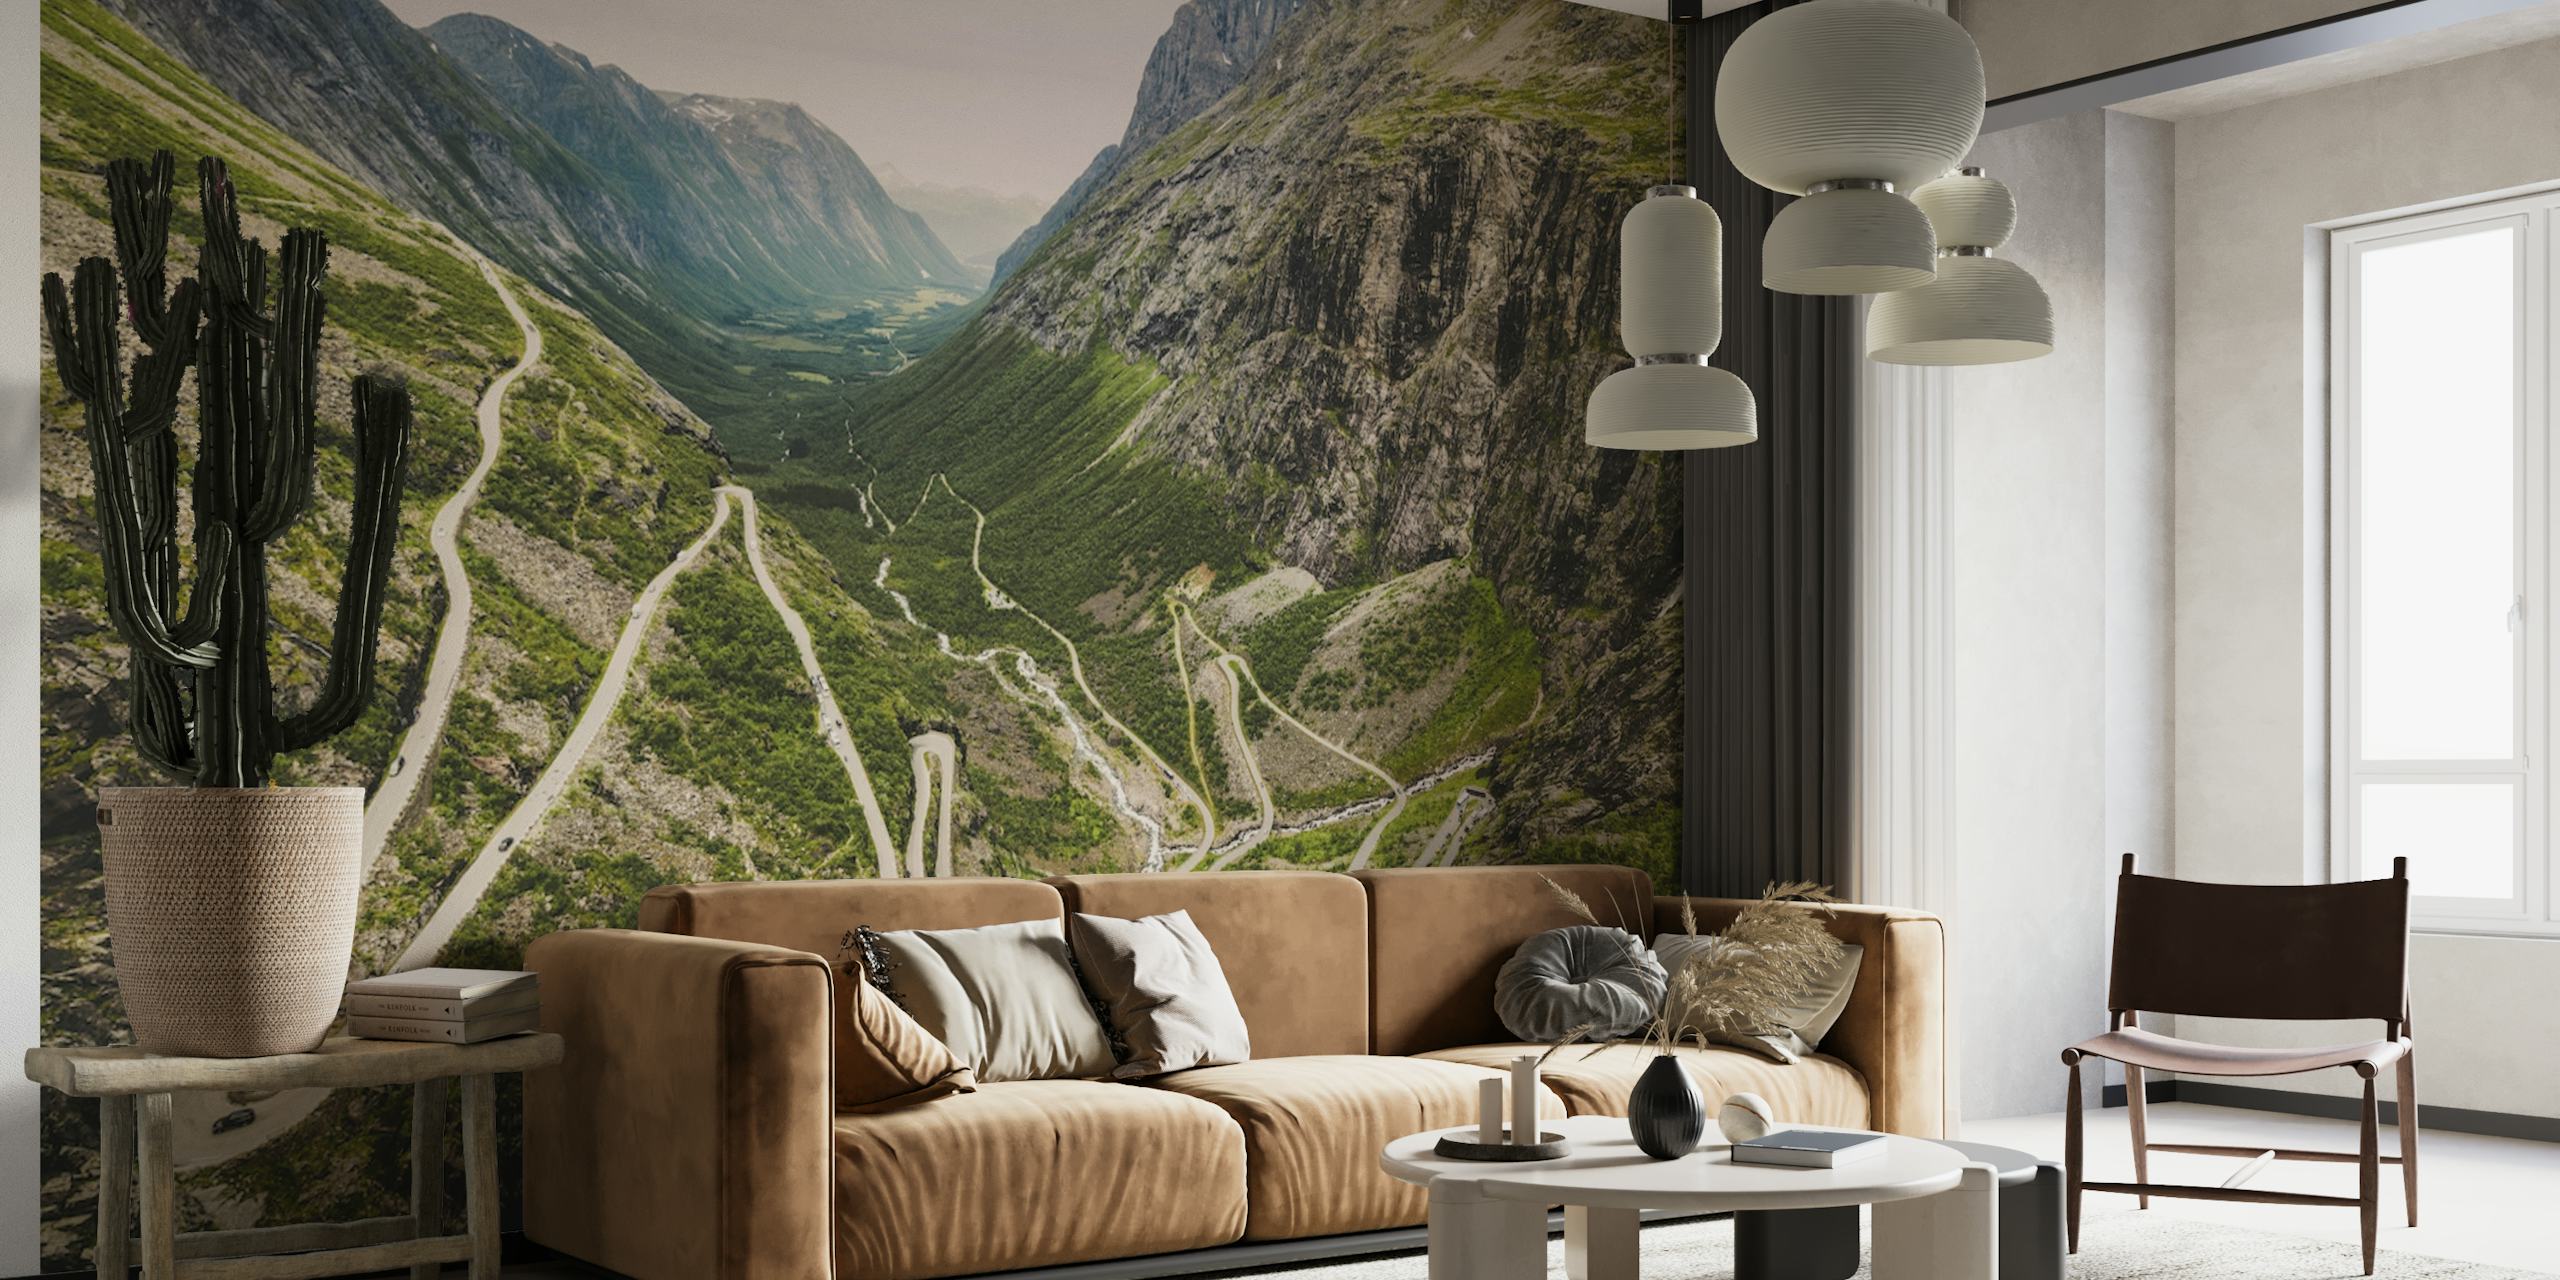 Mural de Trollstigen Noruega que muestra caminos sinuosos y paisajes de montaña